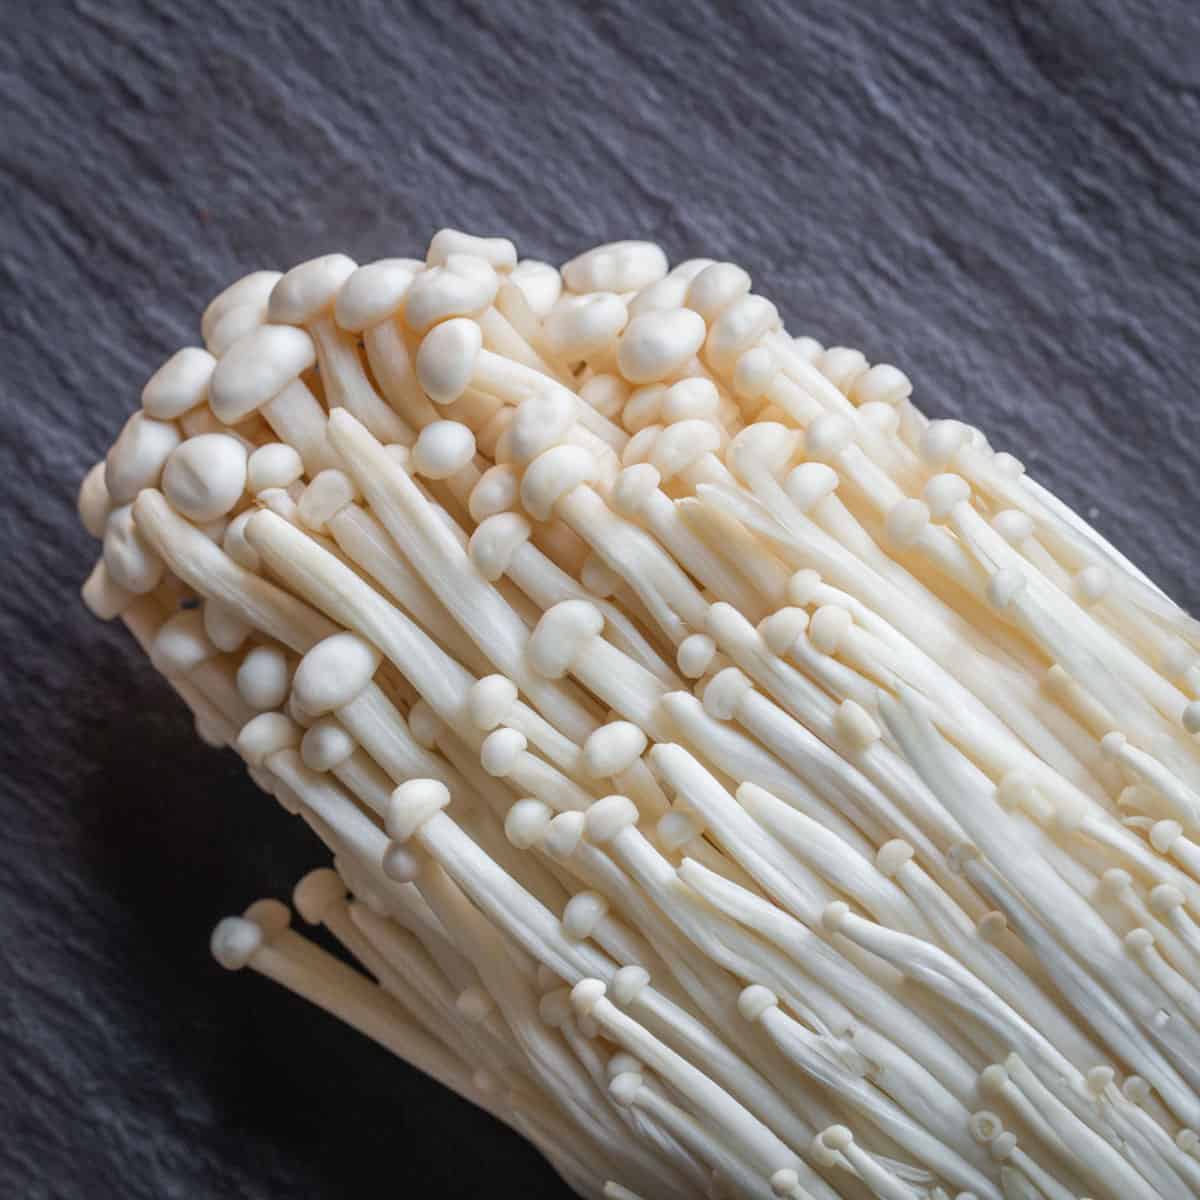 Mushroom Culture Agar Plates - The CAPN's Mushroom Company